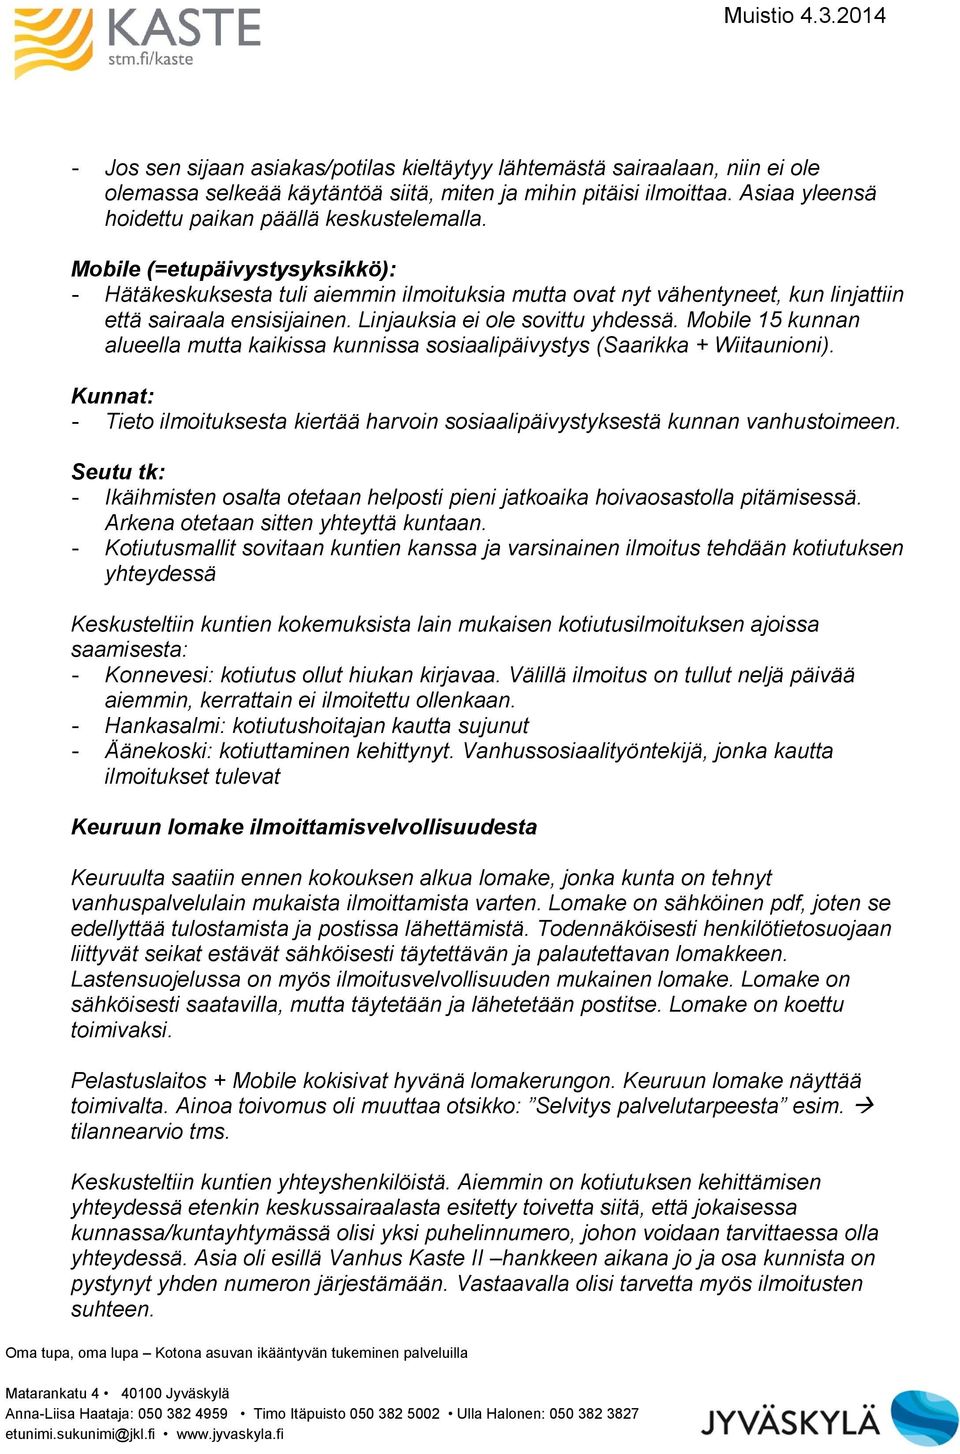 Mobile 15 kunnan alueella mutta kaikissa kunnissa sosiaalipäivystys (Saarikka + Wiitaunioni). Kunnat: - Tieto ilmoituksesta kiertää harvoin sosiaalipäivystyksestä kunnan vanhustoimeen.